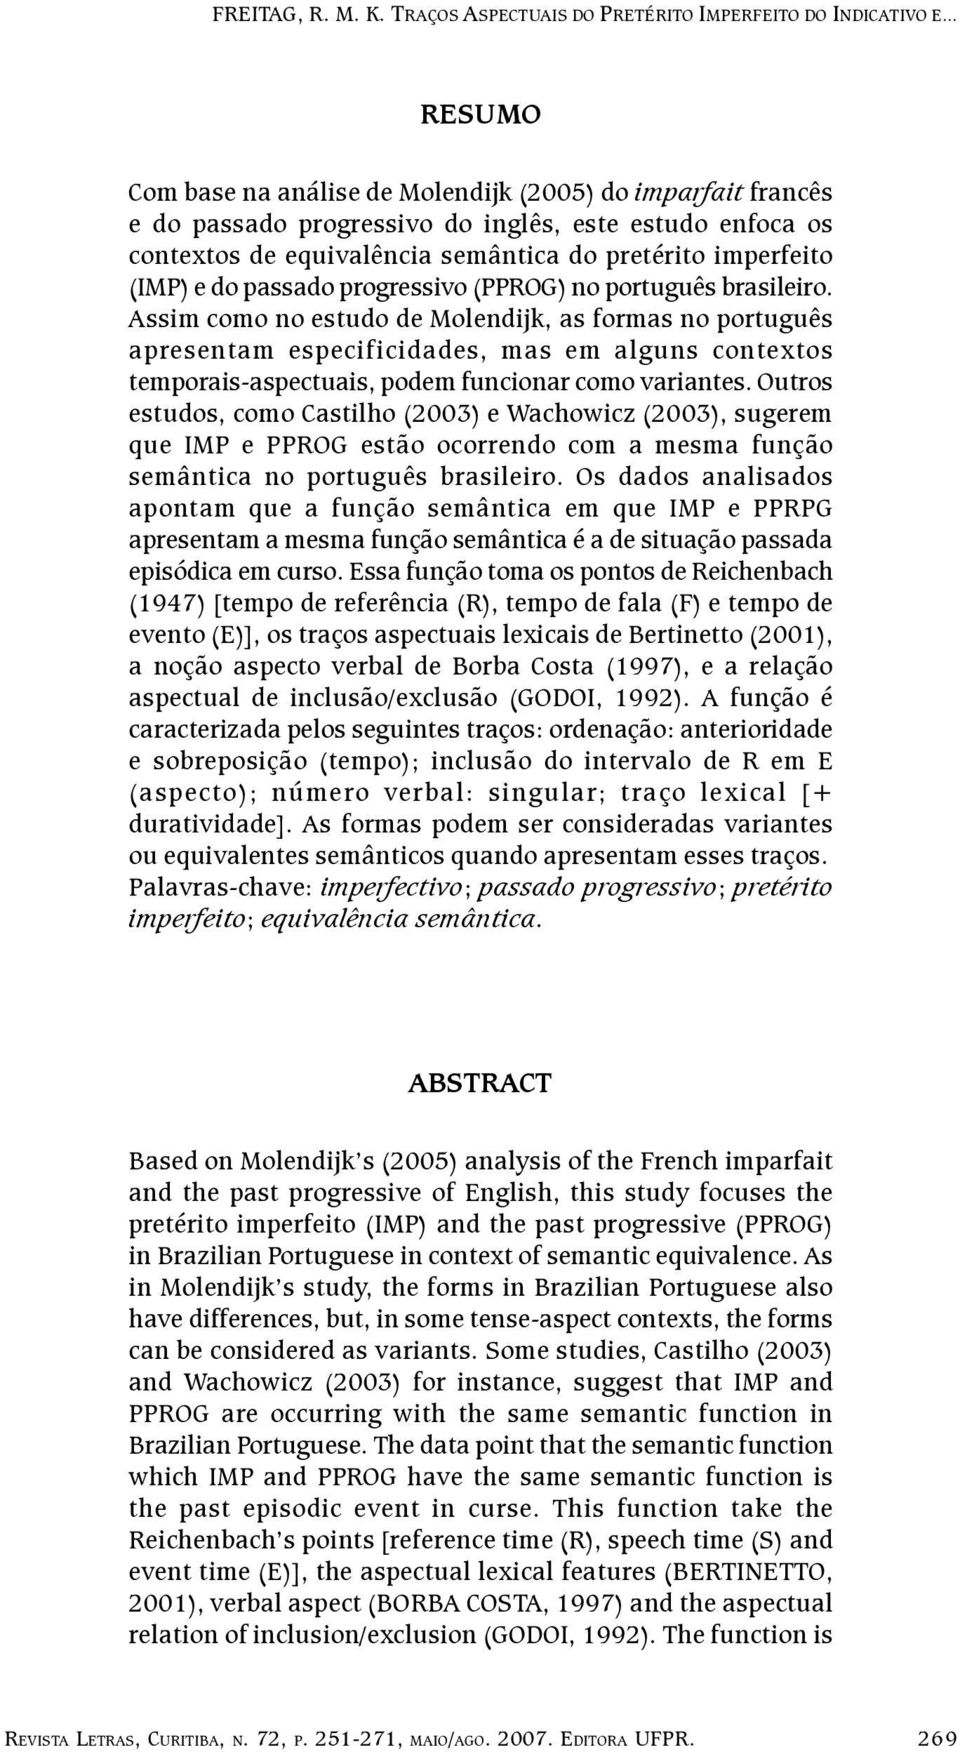 Assim como no estudo de Molendijk, as formas no português apresentam especificidades, mas em alguns contextos temporais-aspectuais, podem funcionar como variantes.